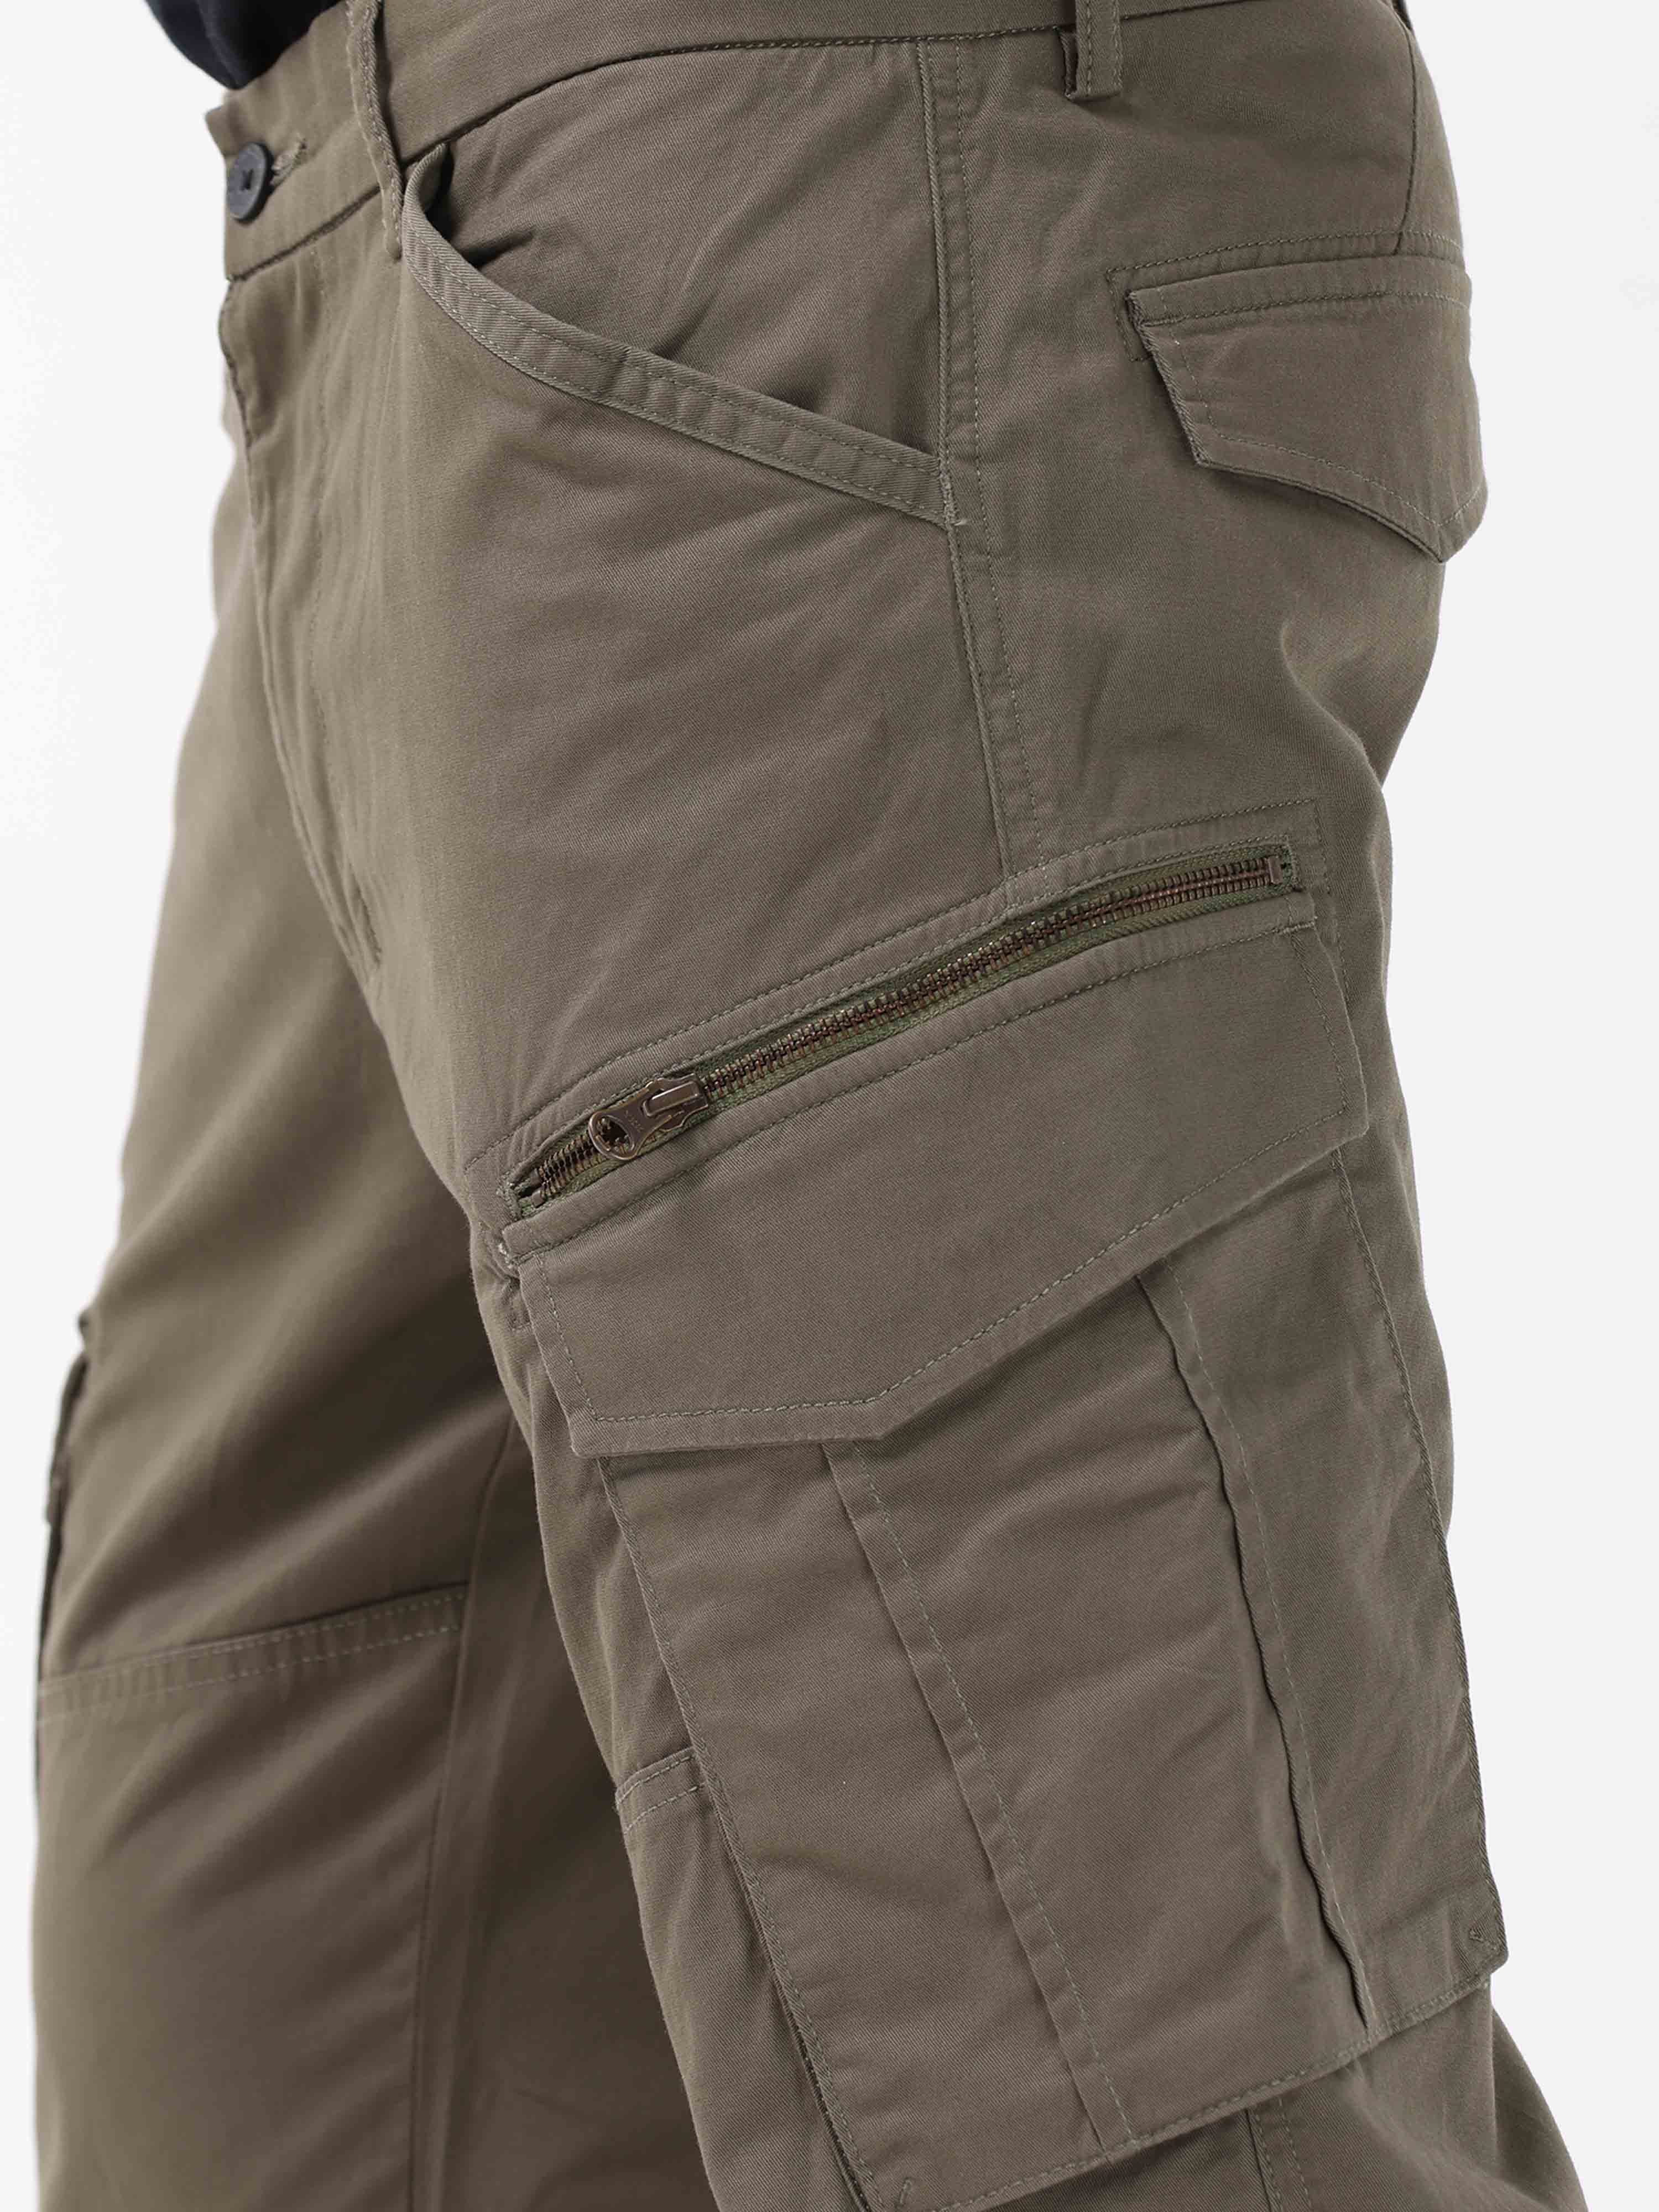 NWT Ted Baker Mens Pashion Plain Trouser Size 32L Jonvant Italian Fabric  Wool | eBay